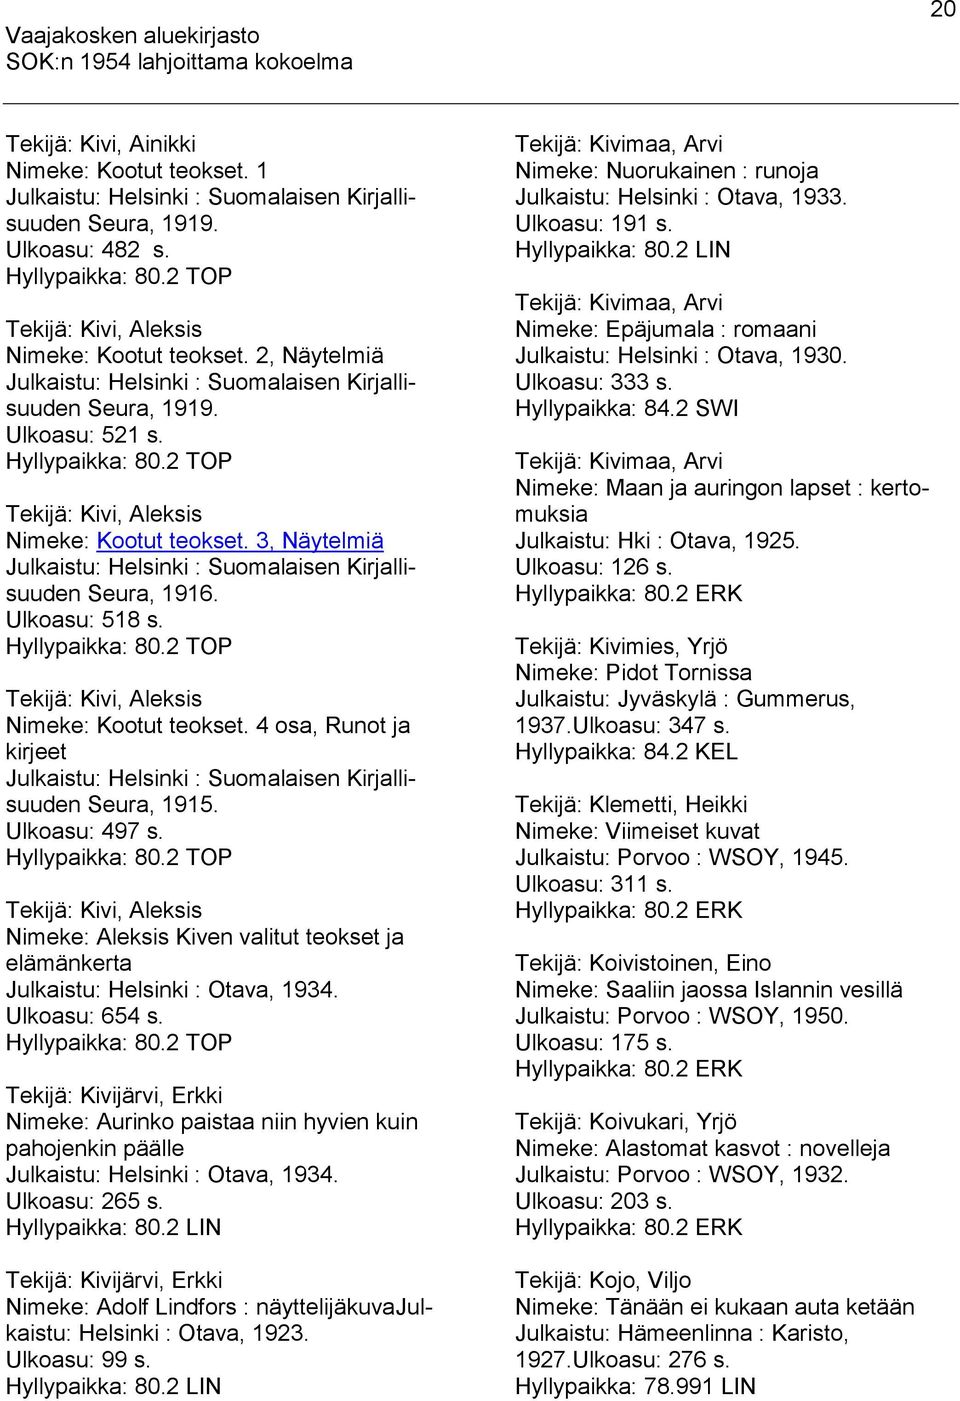 3, Näytelmiä Julkaistu: Helsinki : Suomalaisen Kirjallisuuden Seura, 1916. Ulkoasu: 518 s. Hyllypaikka: 80.2 TOP Tekijä: Kivi, Aleksis Nimeke: Kootut teokset.